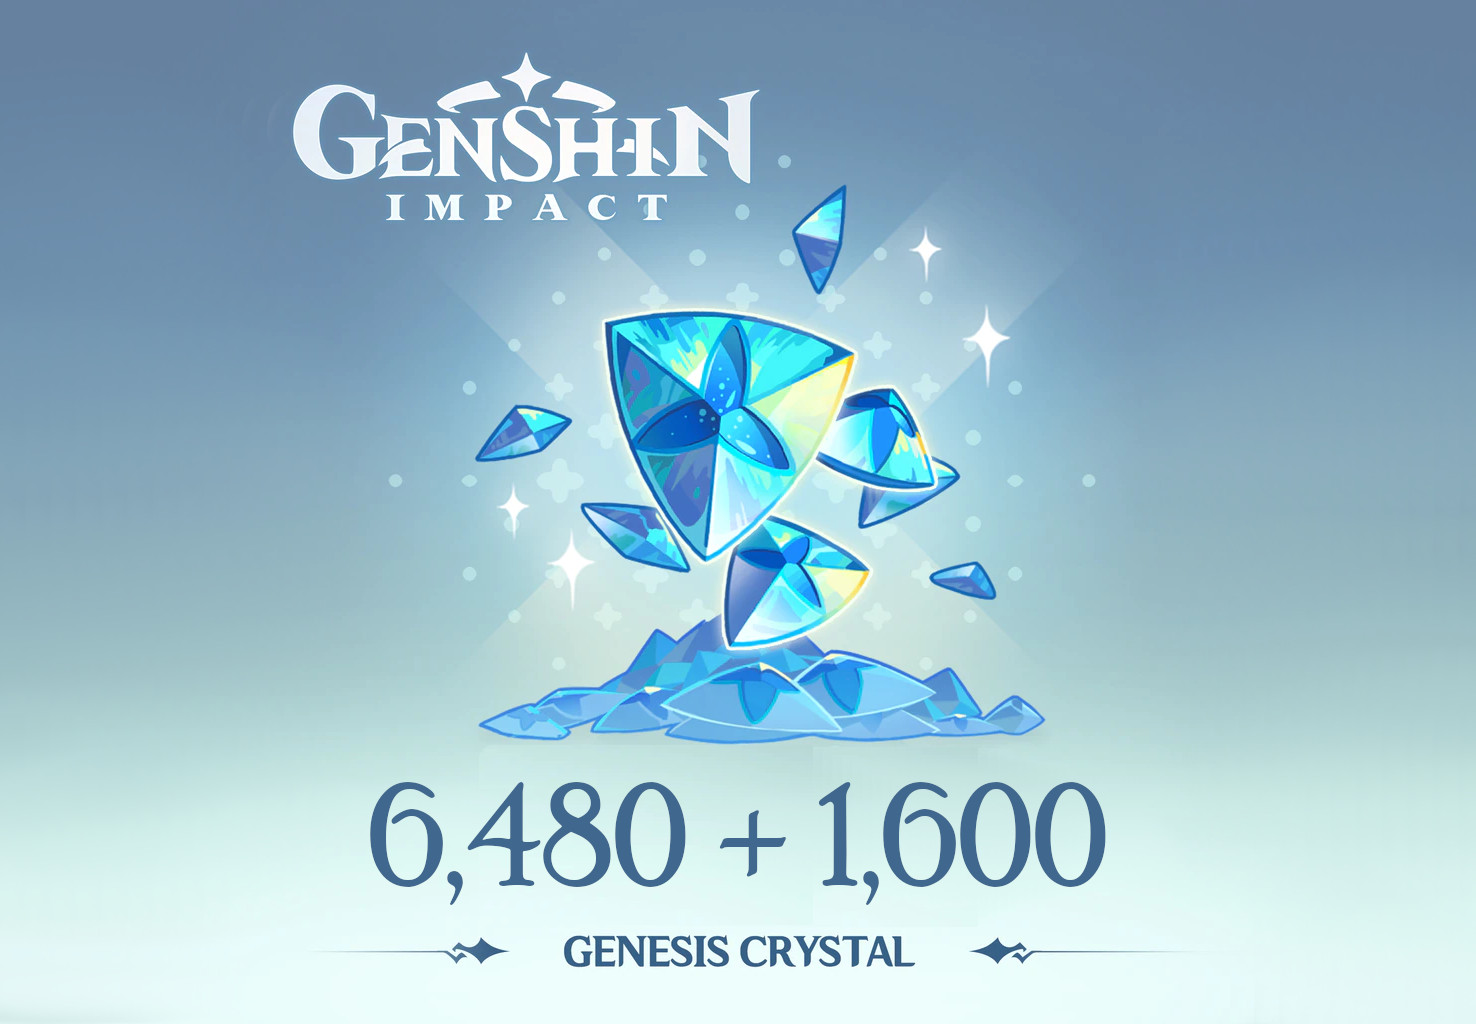 Genshin Impact - 6,480 + 1,600 Genesis Crystals Reidos Voucher 107.29 $